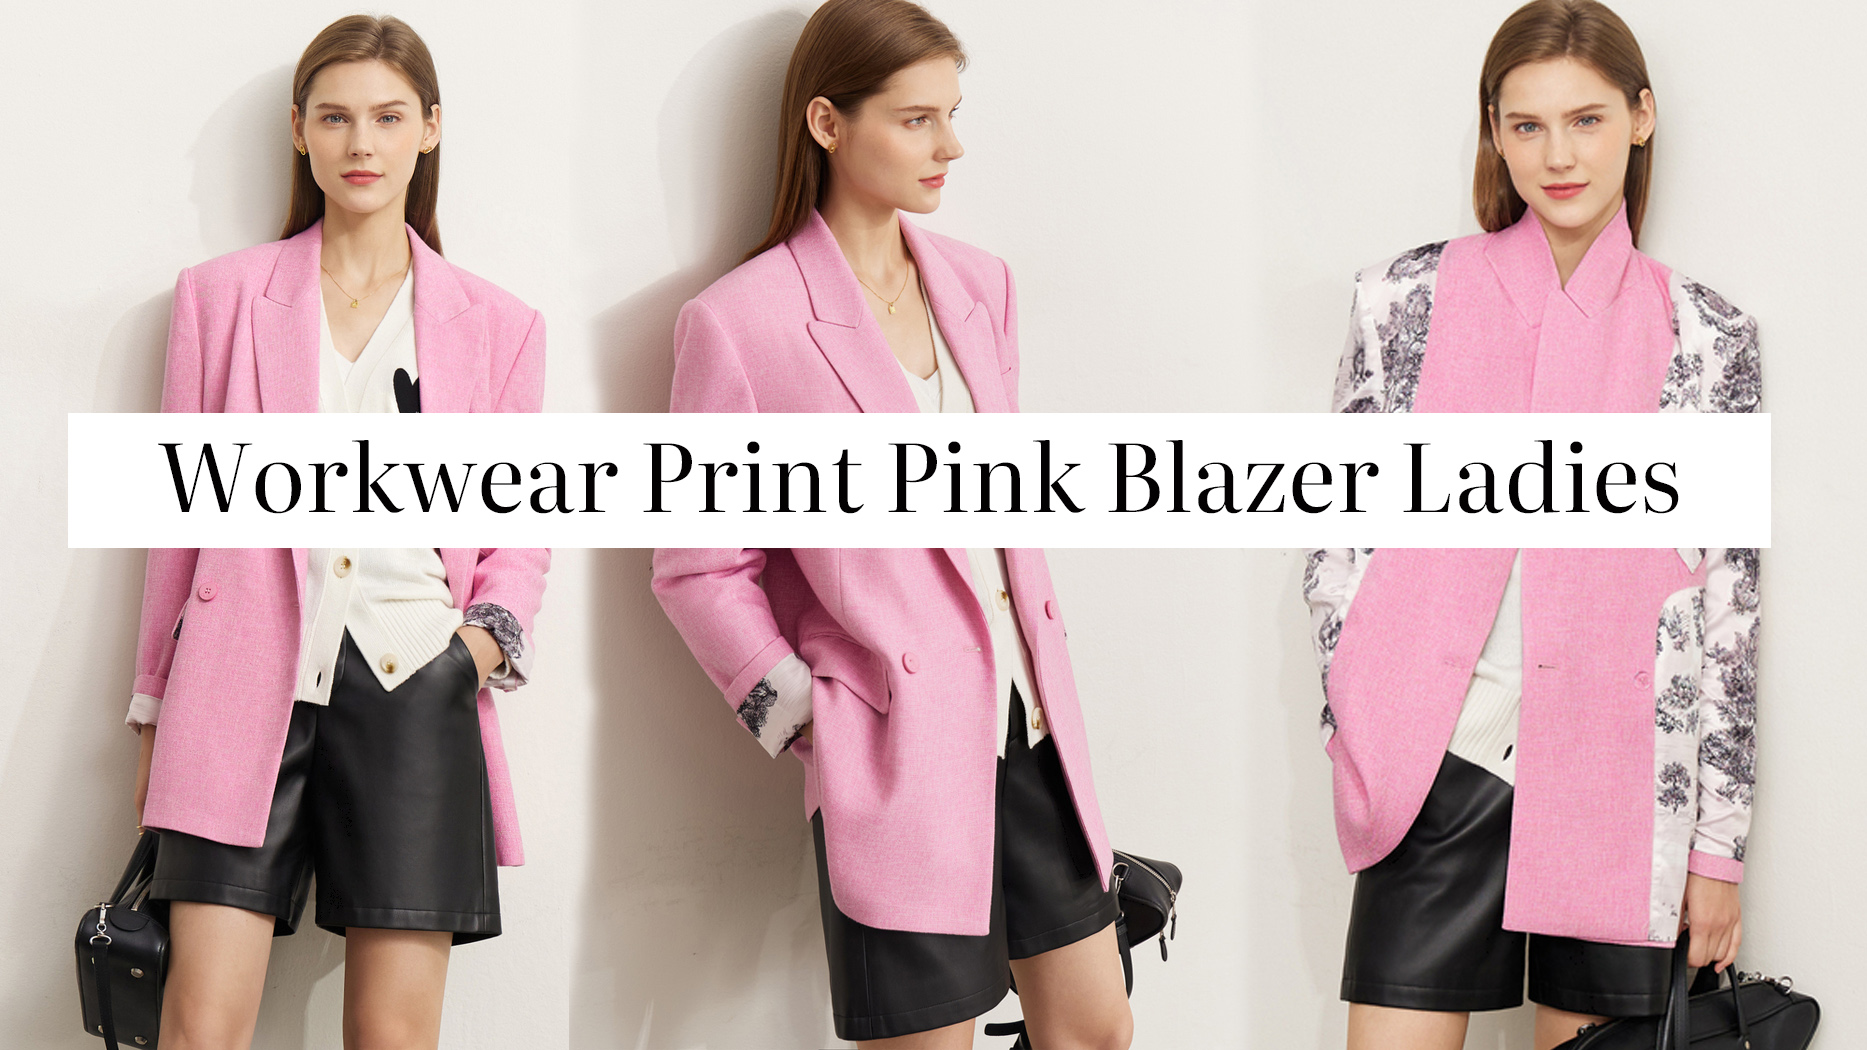 Quality Workwear Print Pink Blazer Ladies Manufacturer | Auschalink